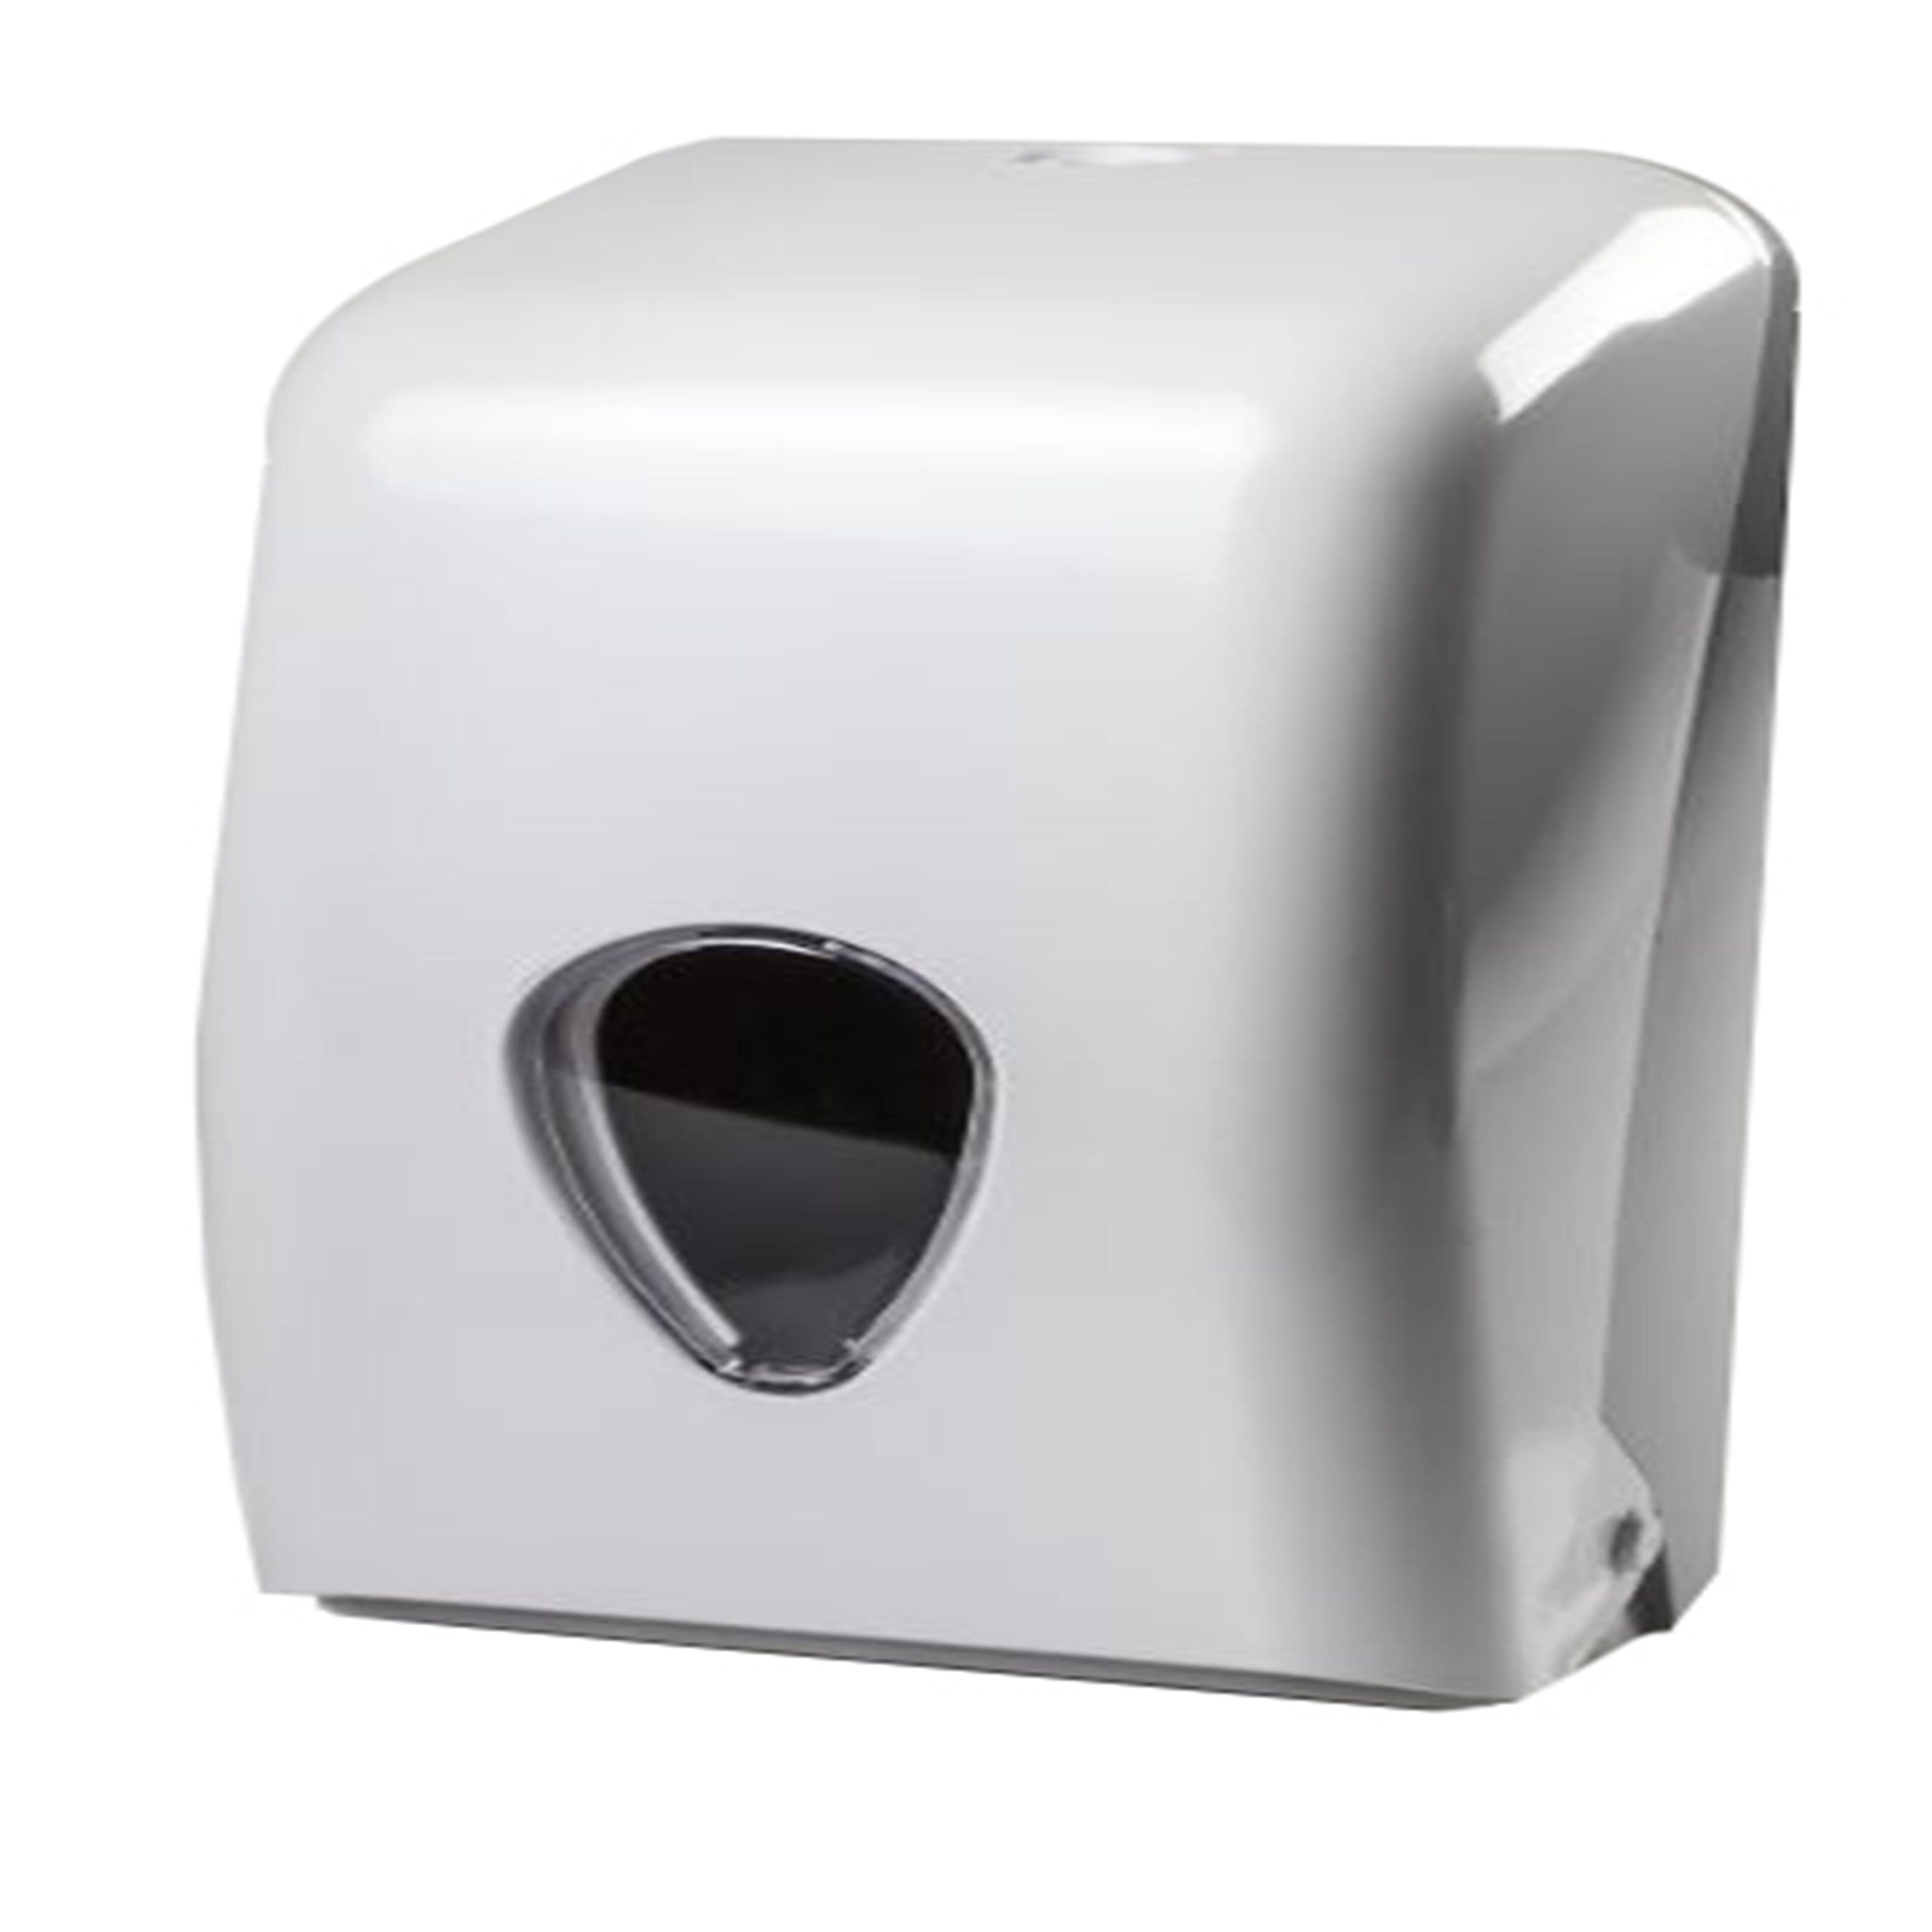 Dispensador de papel higiénico industrial en color blanco